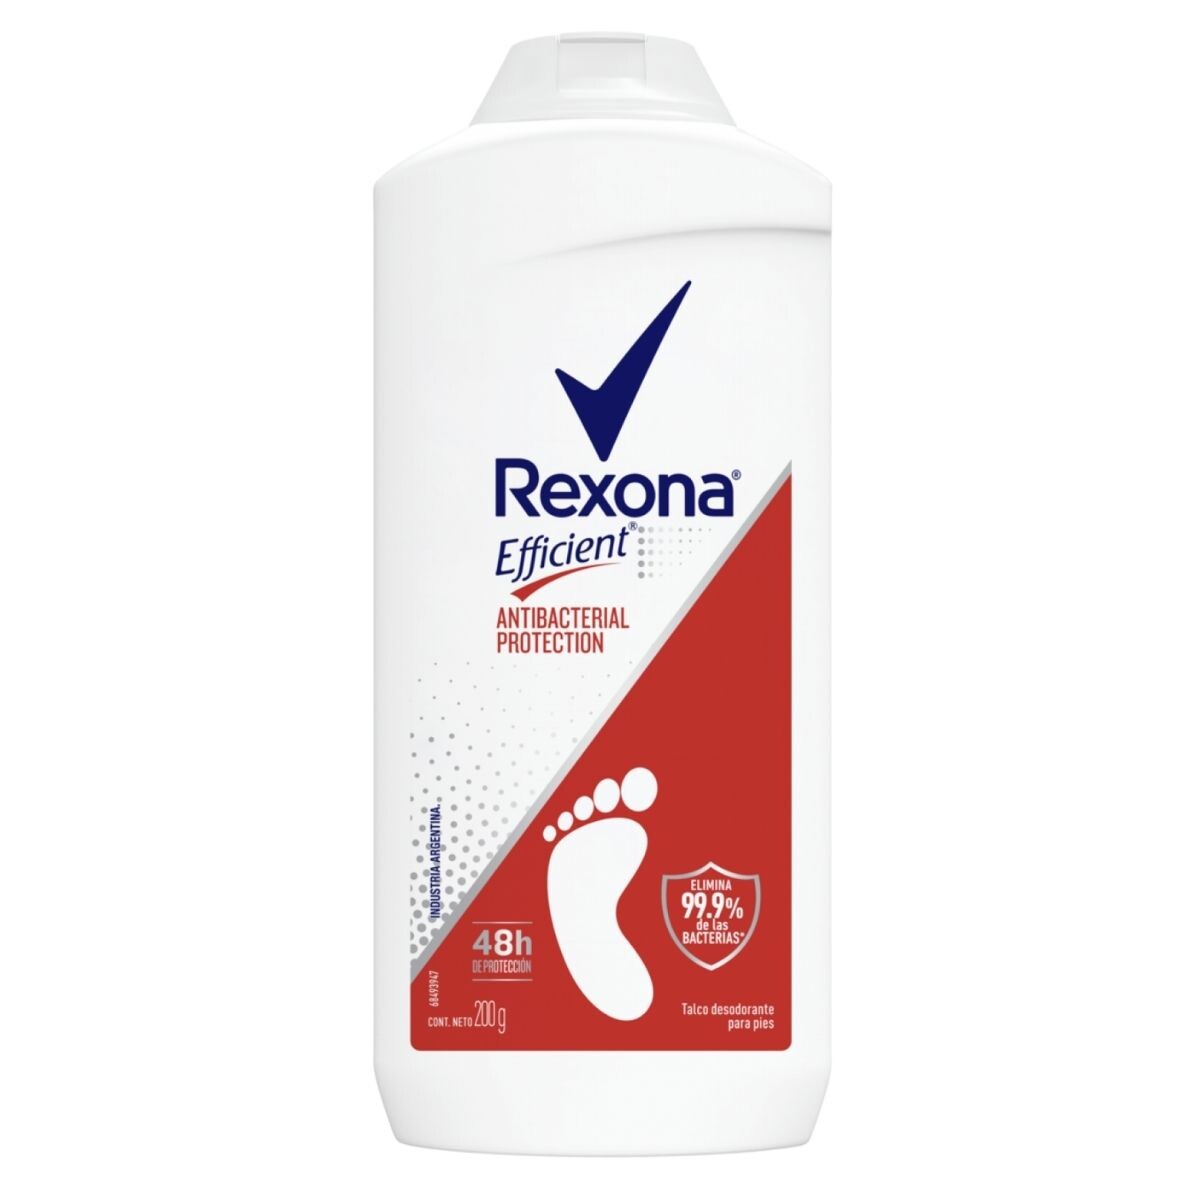 Talco Desodorante para Pies Rexona Efficient Antibacterial Protection - 200 GR 